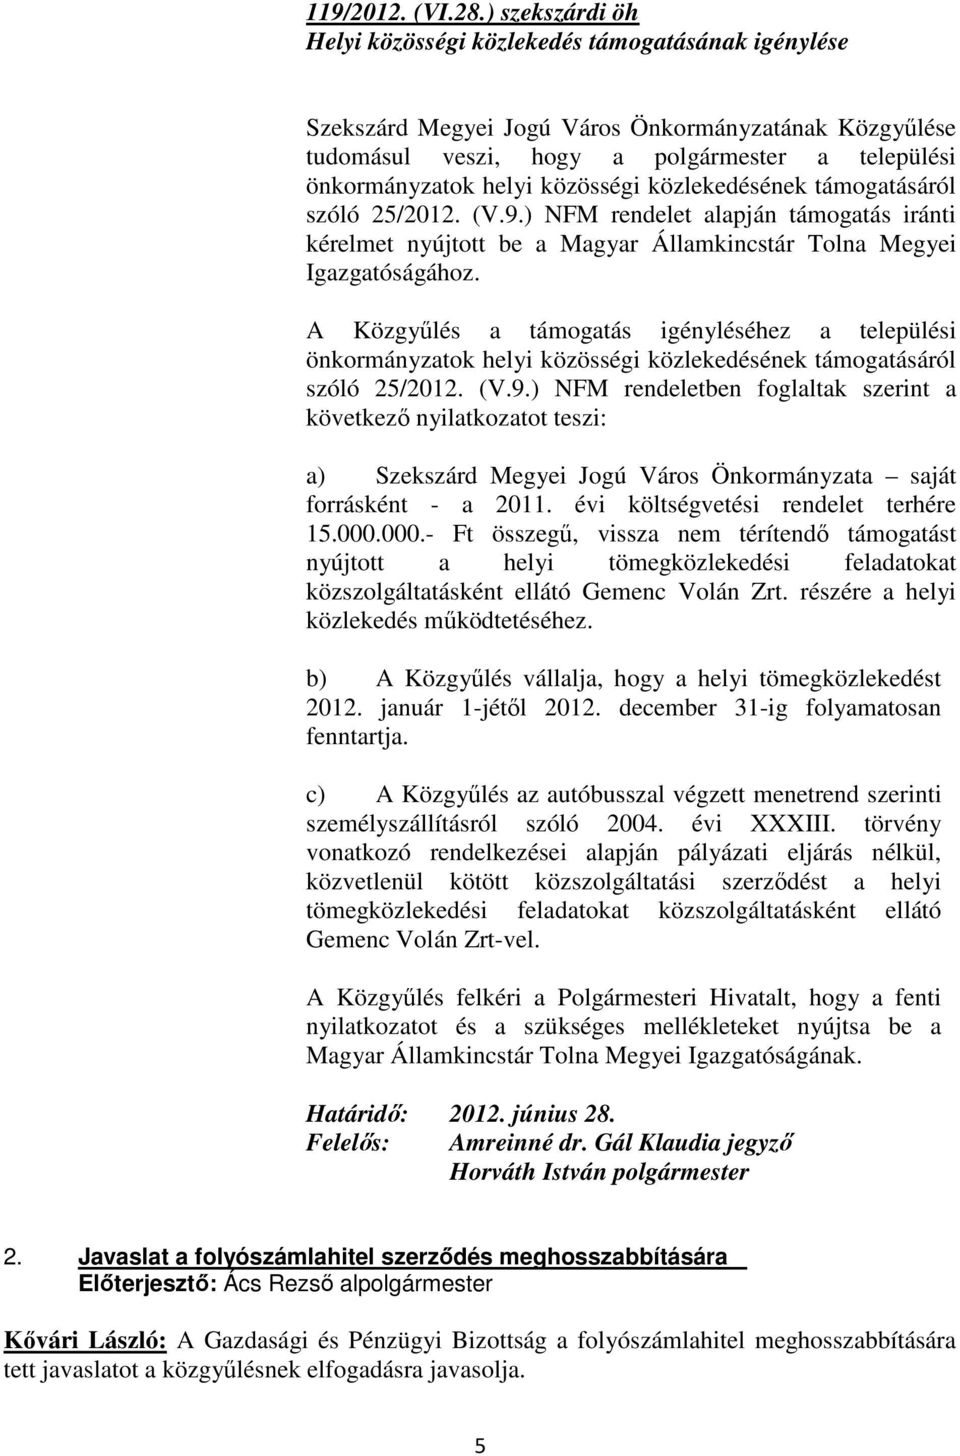 közösségi közlekedésének támogatásáról szóló 25/2012. (V.9.) NFM rendelet alapján támogatás iránti kérelmet nyújtott be a Magyar Államkincstár Tolna Megyei Igazgatóságához.